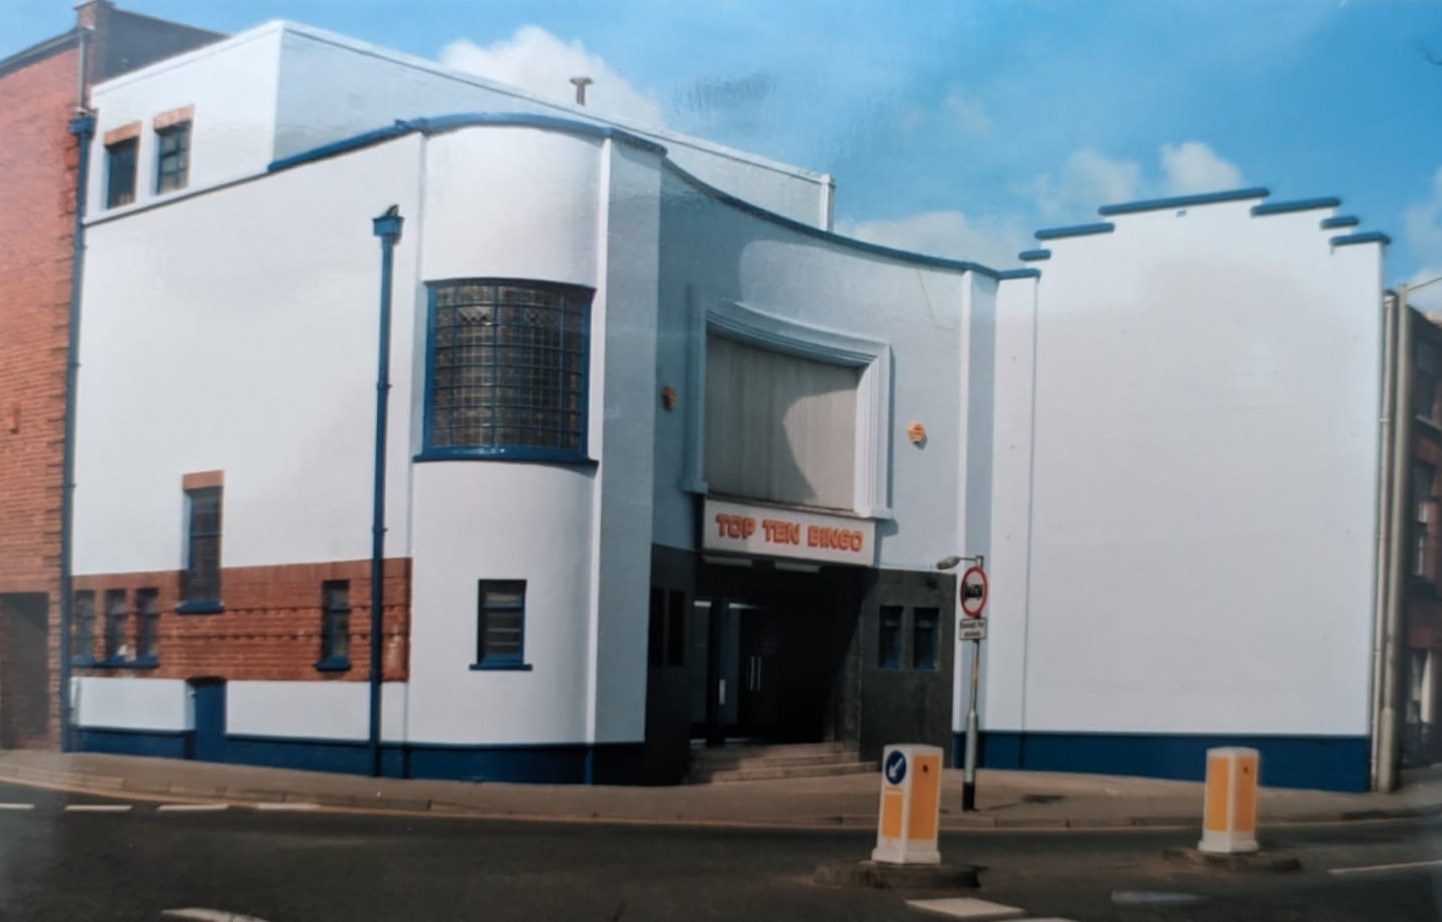 The former Clifton cinema as Top Ten Bingo